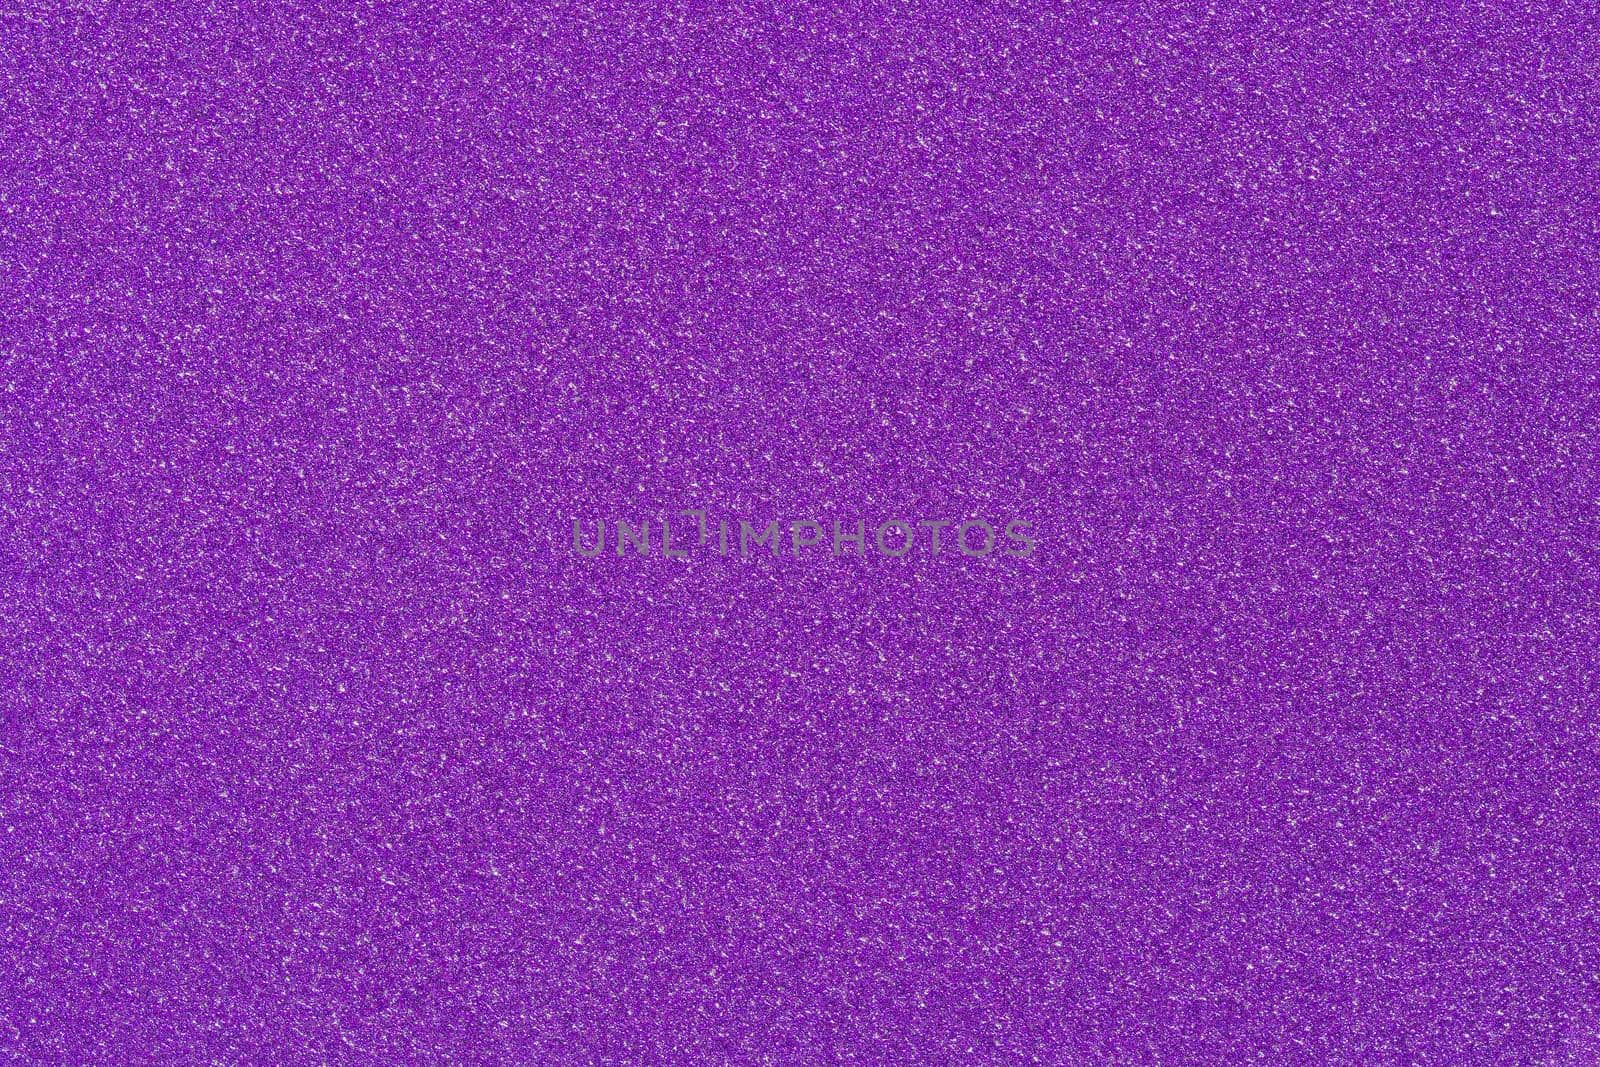 Purple background. Glitter decorative festive for design